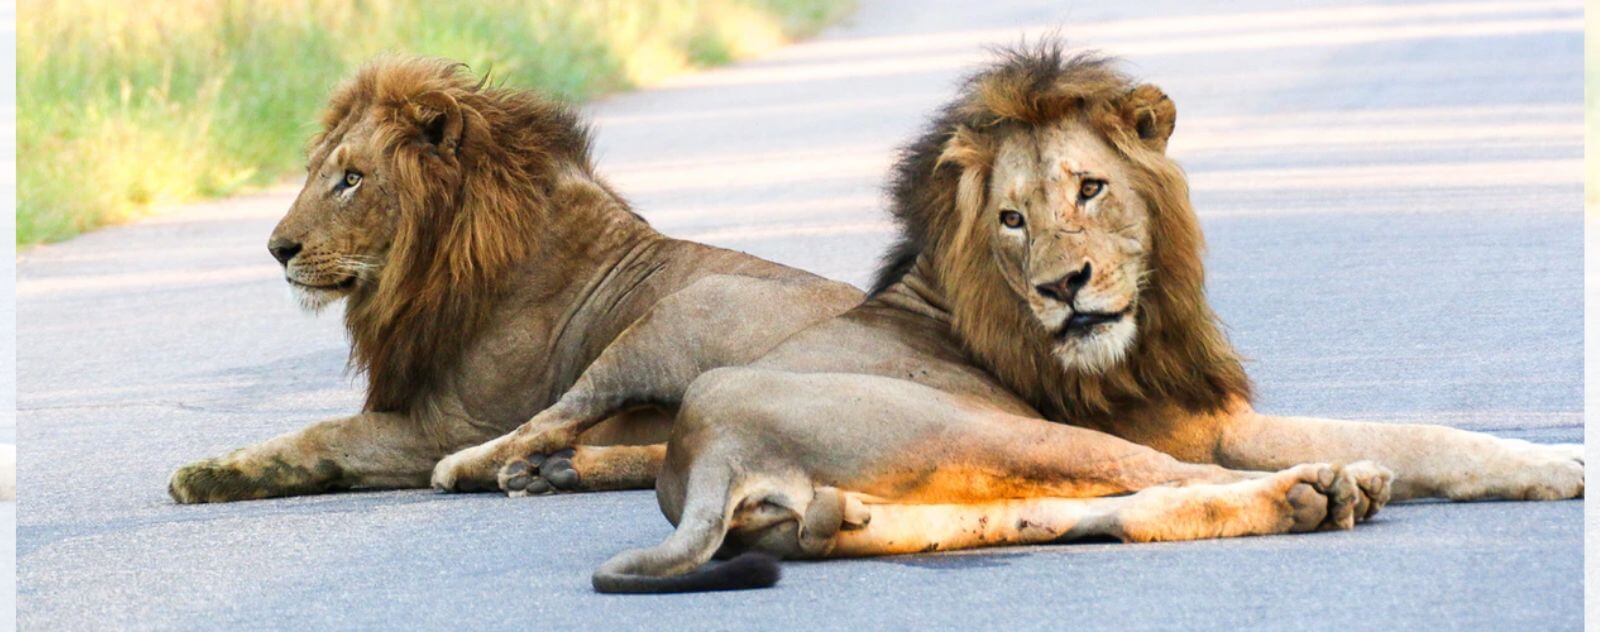 Deux Lions Nomades Allongés sur la Route